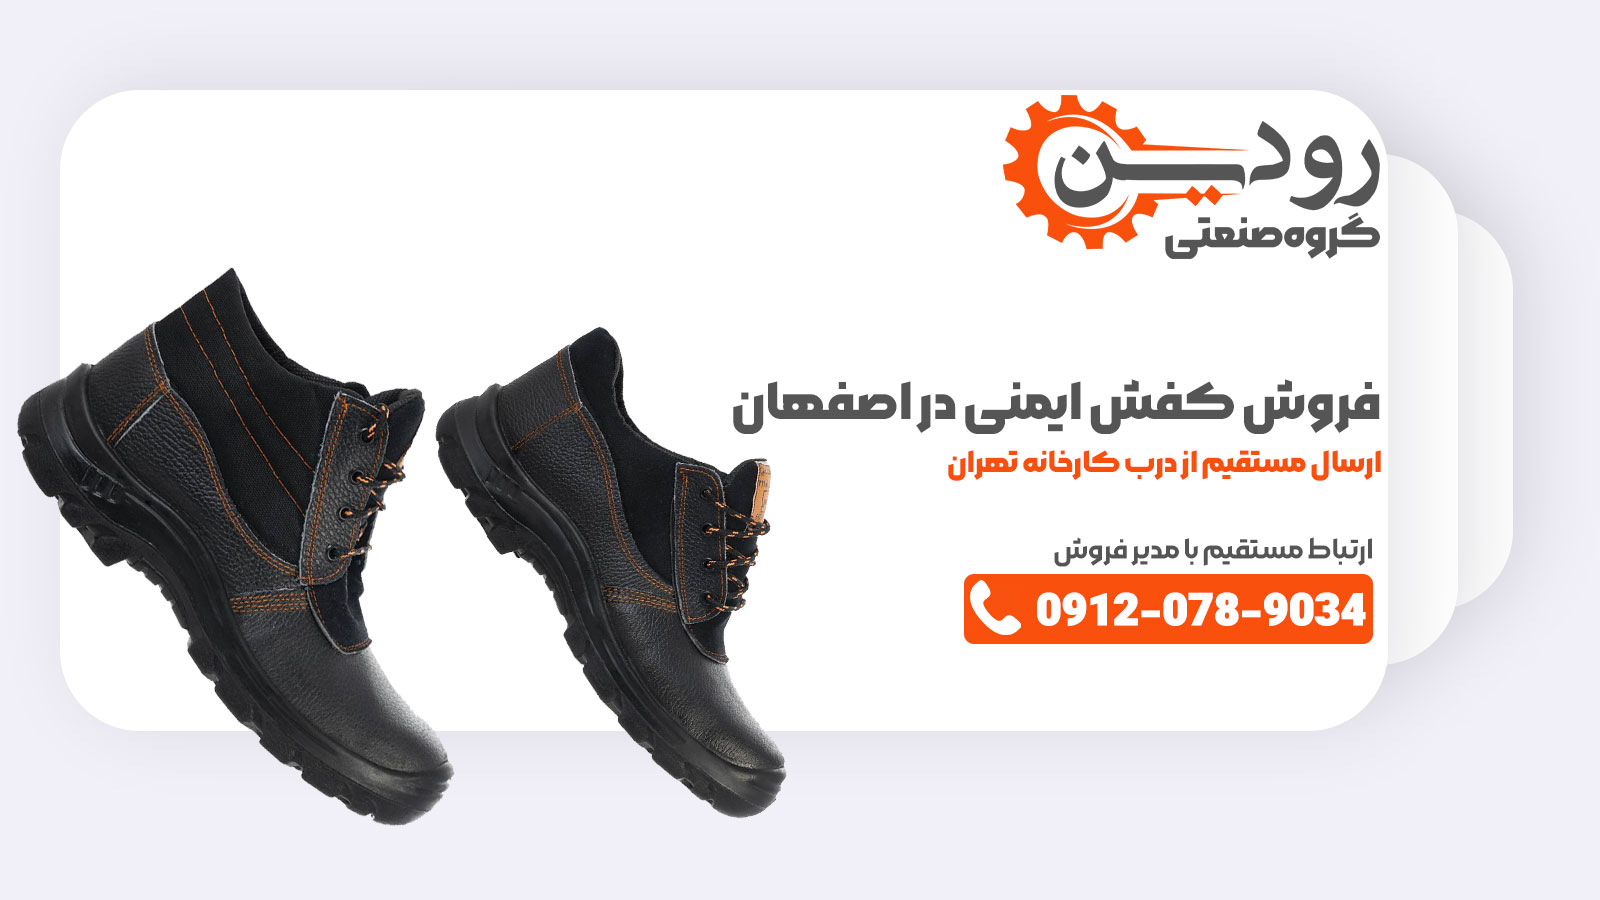 افتتاح کارخانه تولید کفش ایمنی در اصفهان را به شما مشتریان عزیز تبریک می گوییم و میتوانید همین الان خرید کنید.